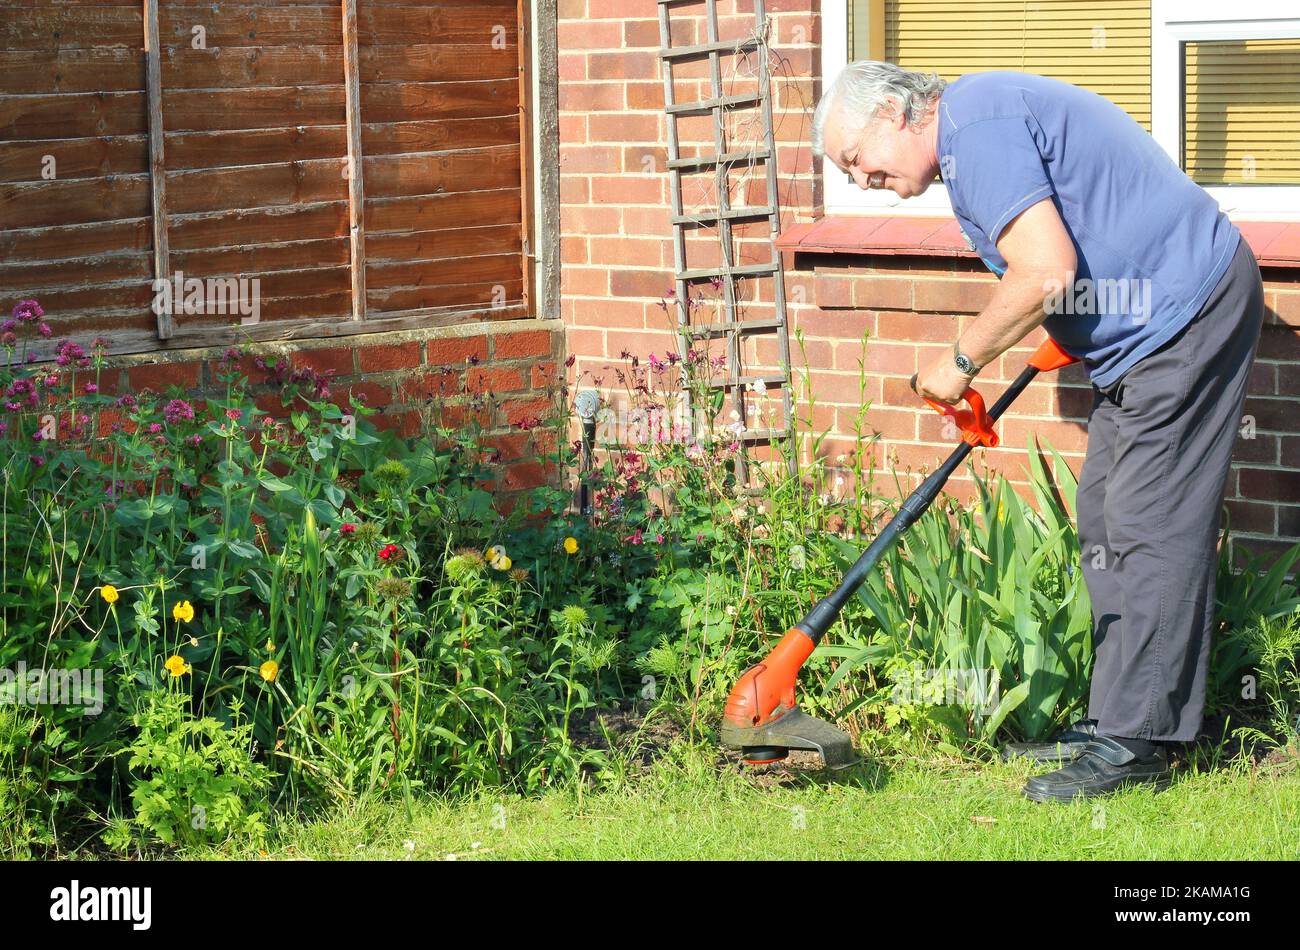 Der ältere Mann streizt glücklich in seinem Garten. Mit Strimmer Gras oder Unkraut abschneiden. Stockfoto